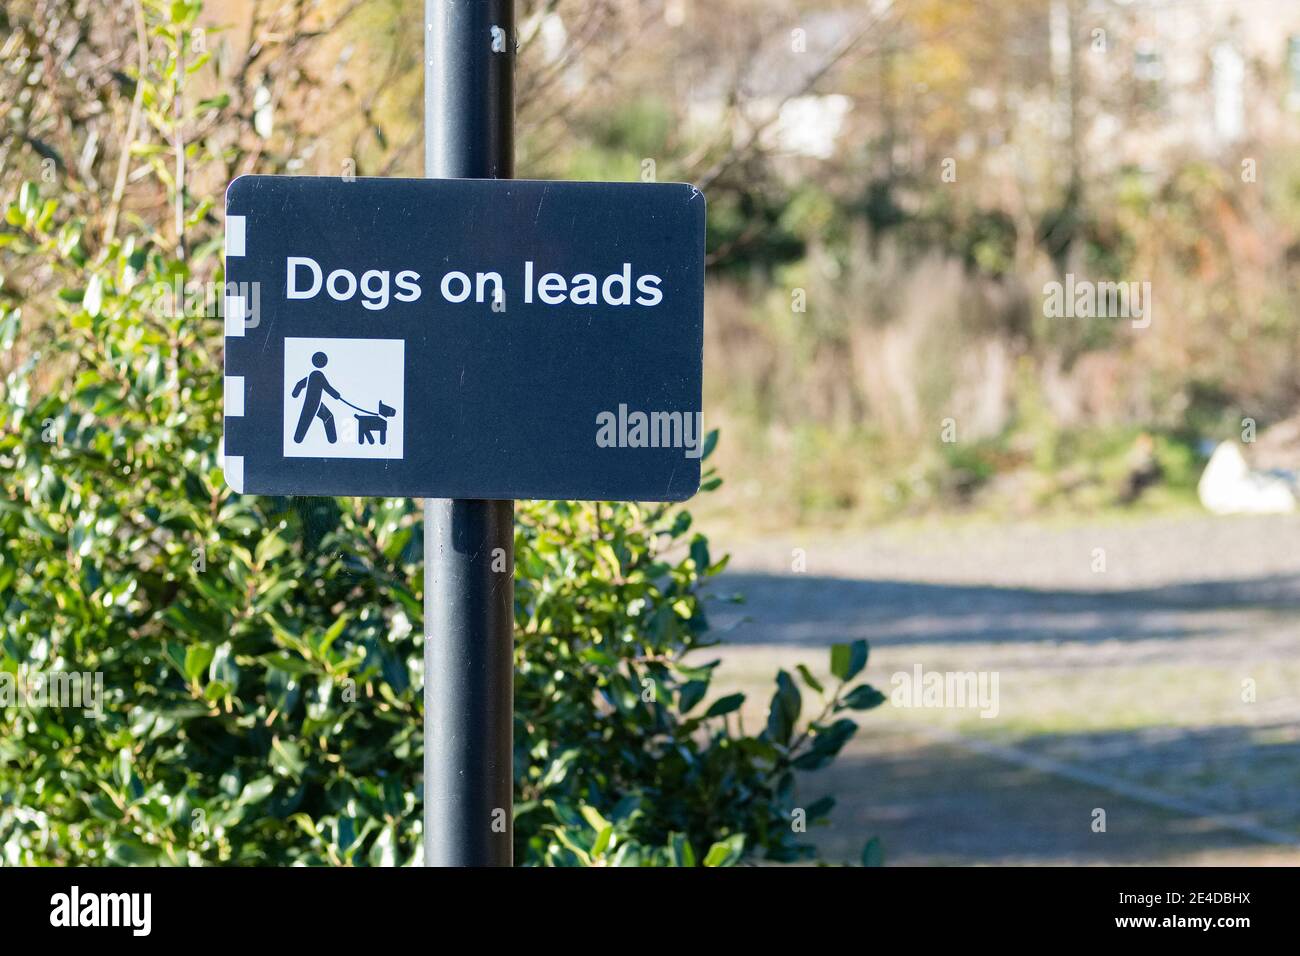 Los perros deben ser mantenidos en un plomo o una correa adentro letrero del área de juegos del parque público Foto de stock